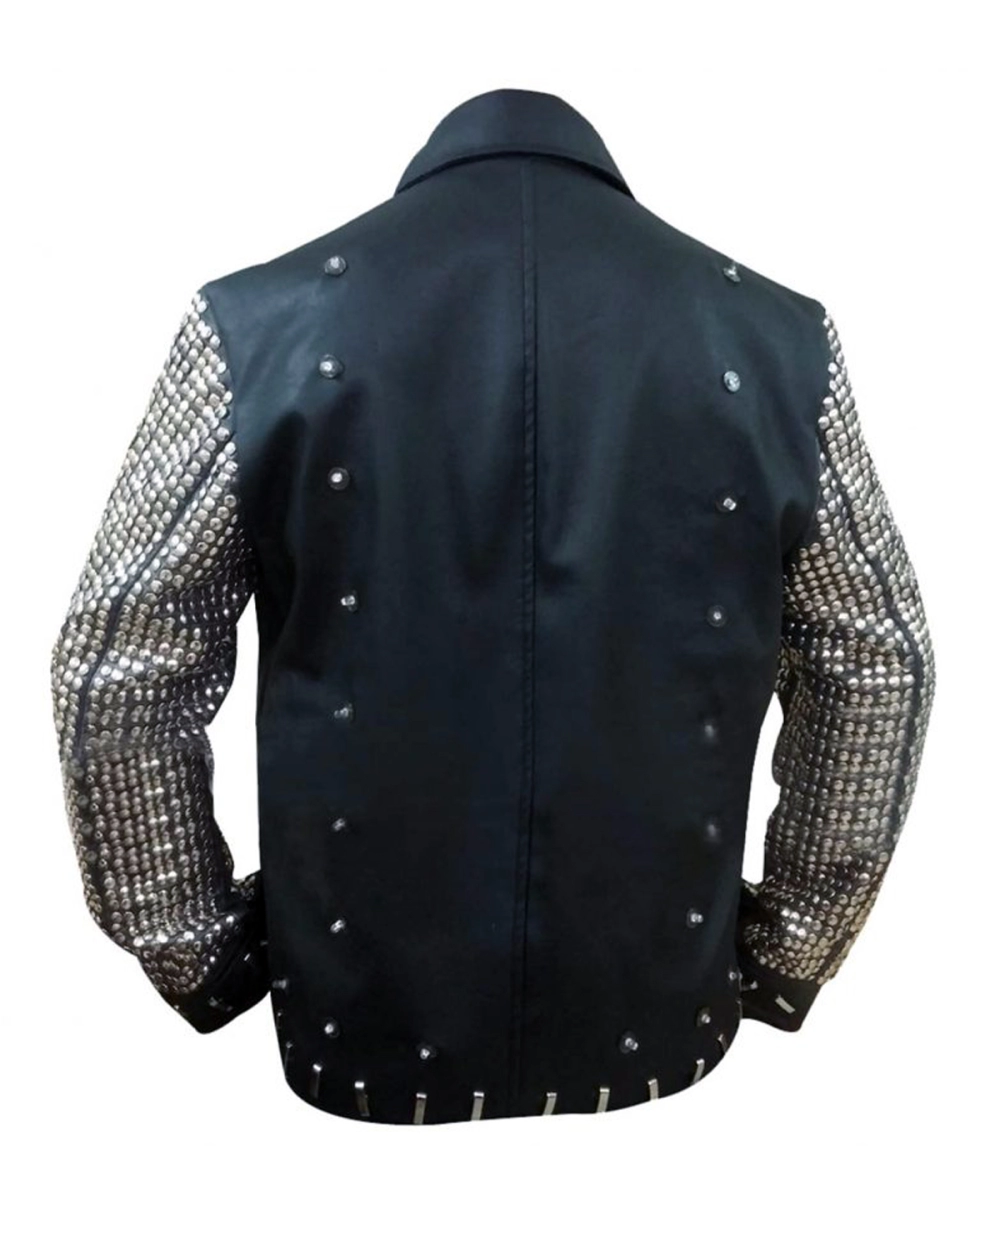 WWE Wrestler Christopher Keith Irvine aka Chris Jericho Black LED Light-up Leather Jacket